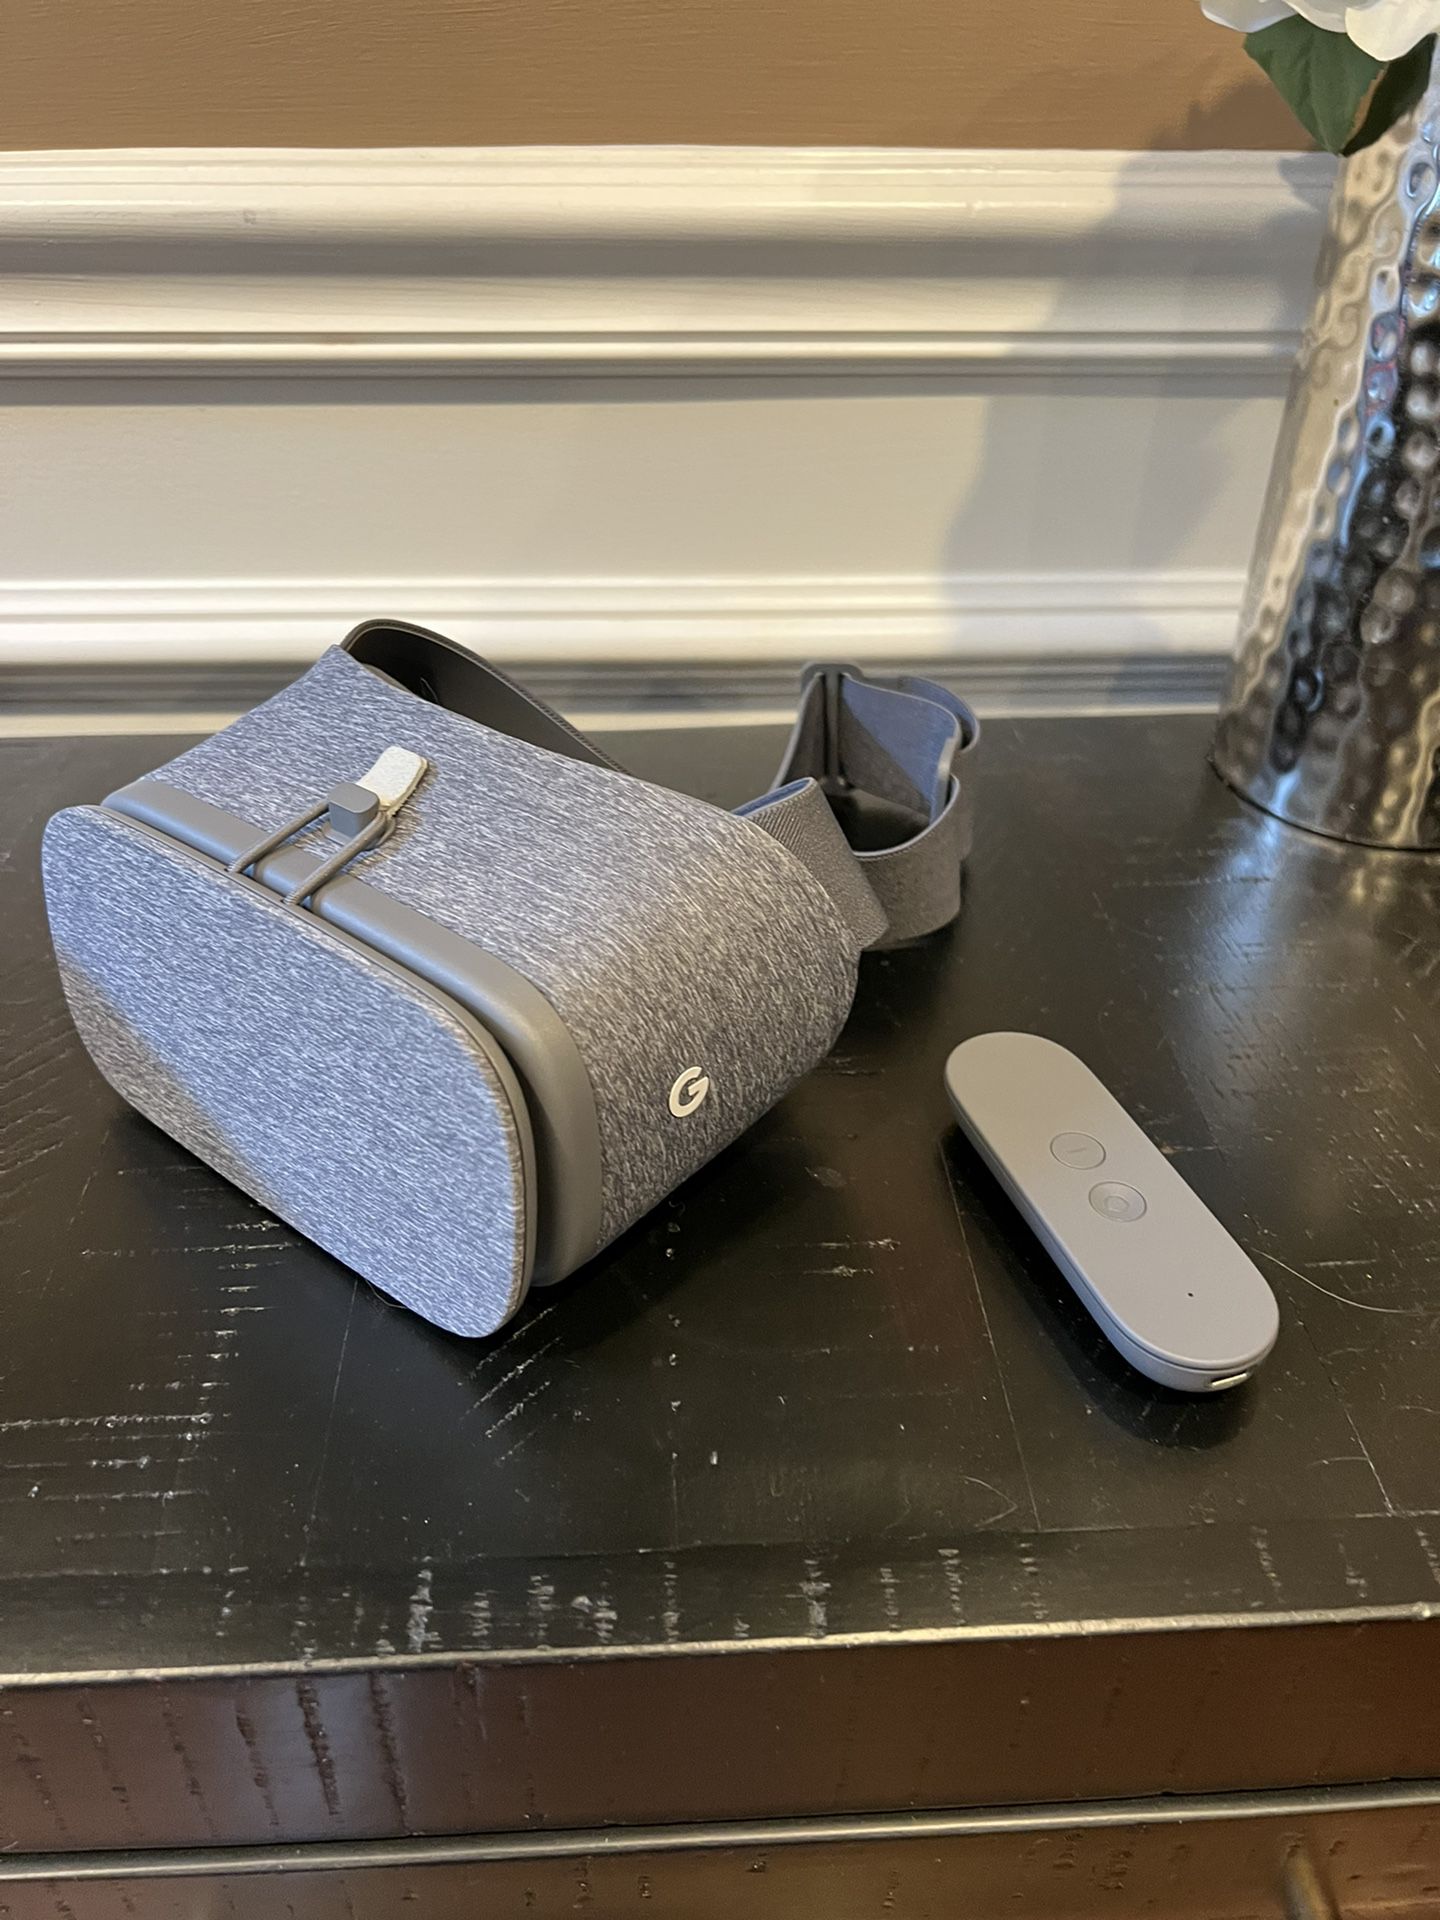 Google VR daydream